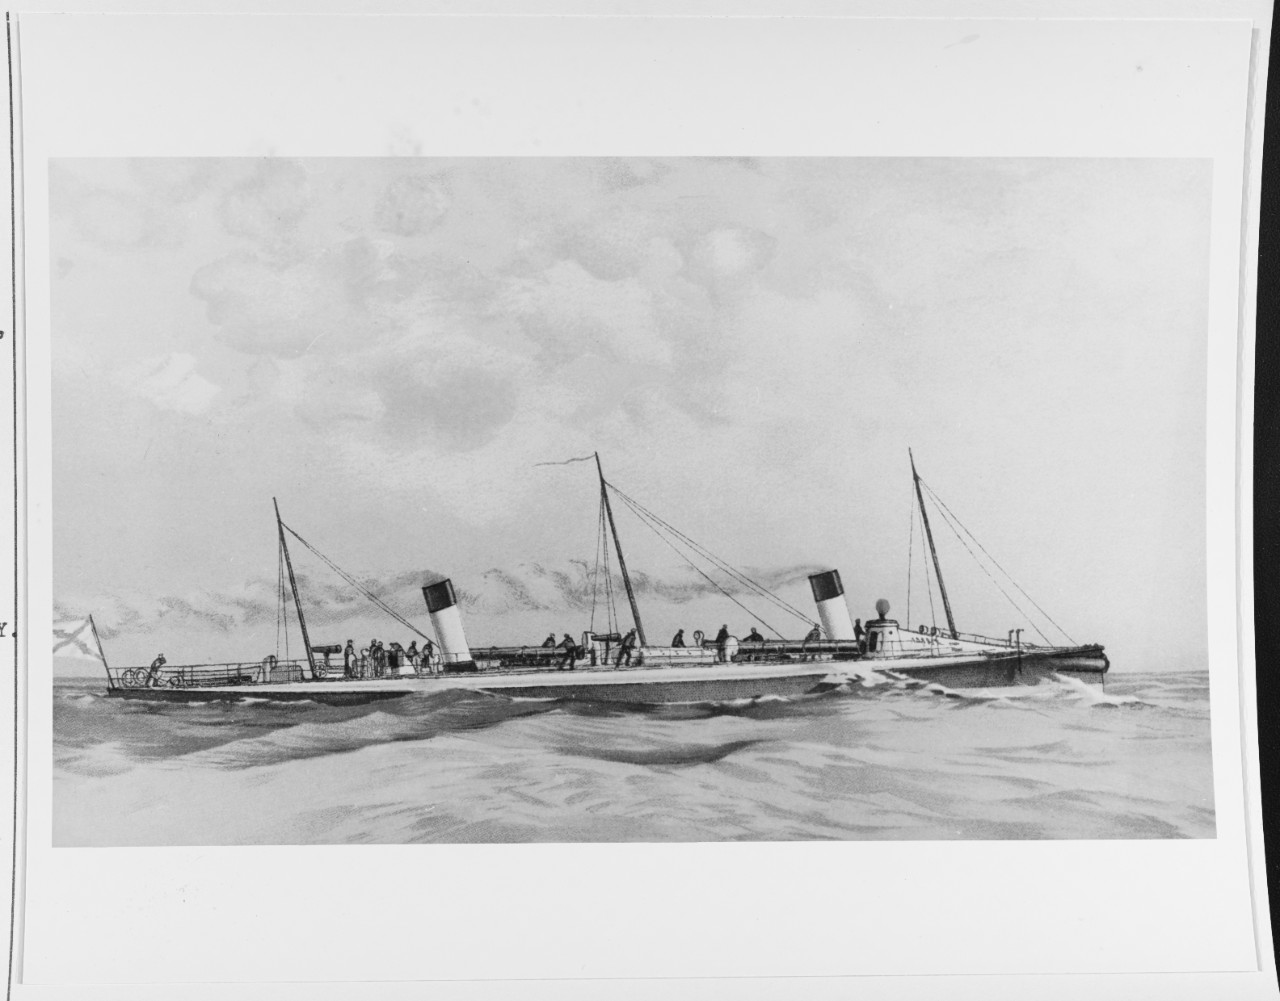 ADLER(Russian torpedo boat, 1877)